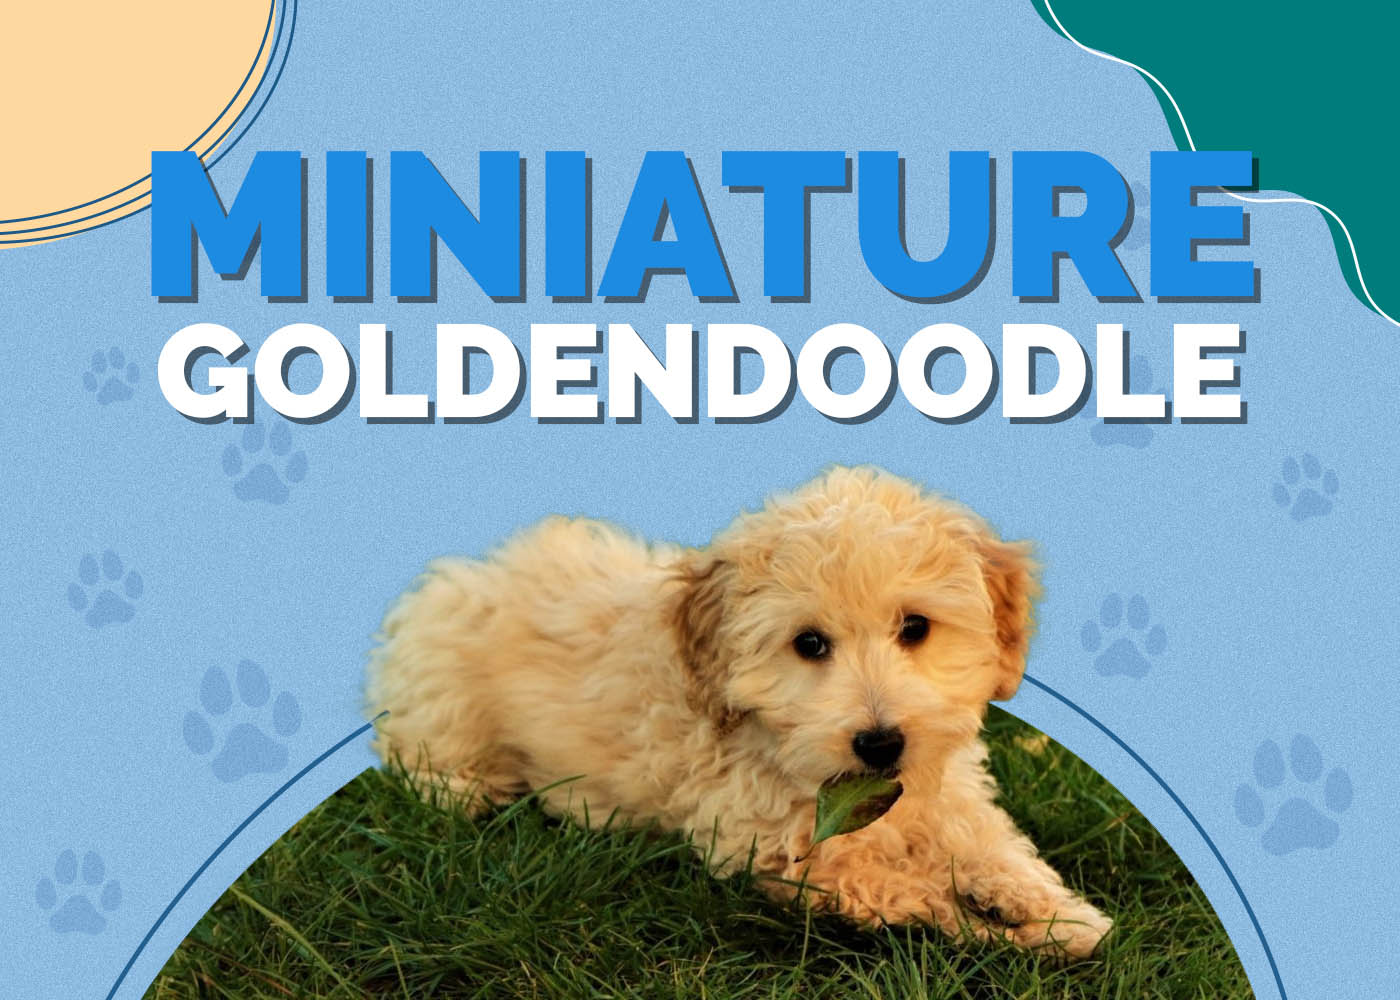 Miniature Goldendoodle (Golden Retriever & Mini Poodle Mix)